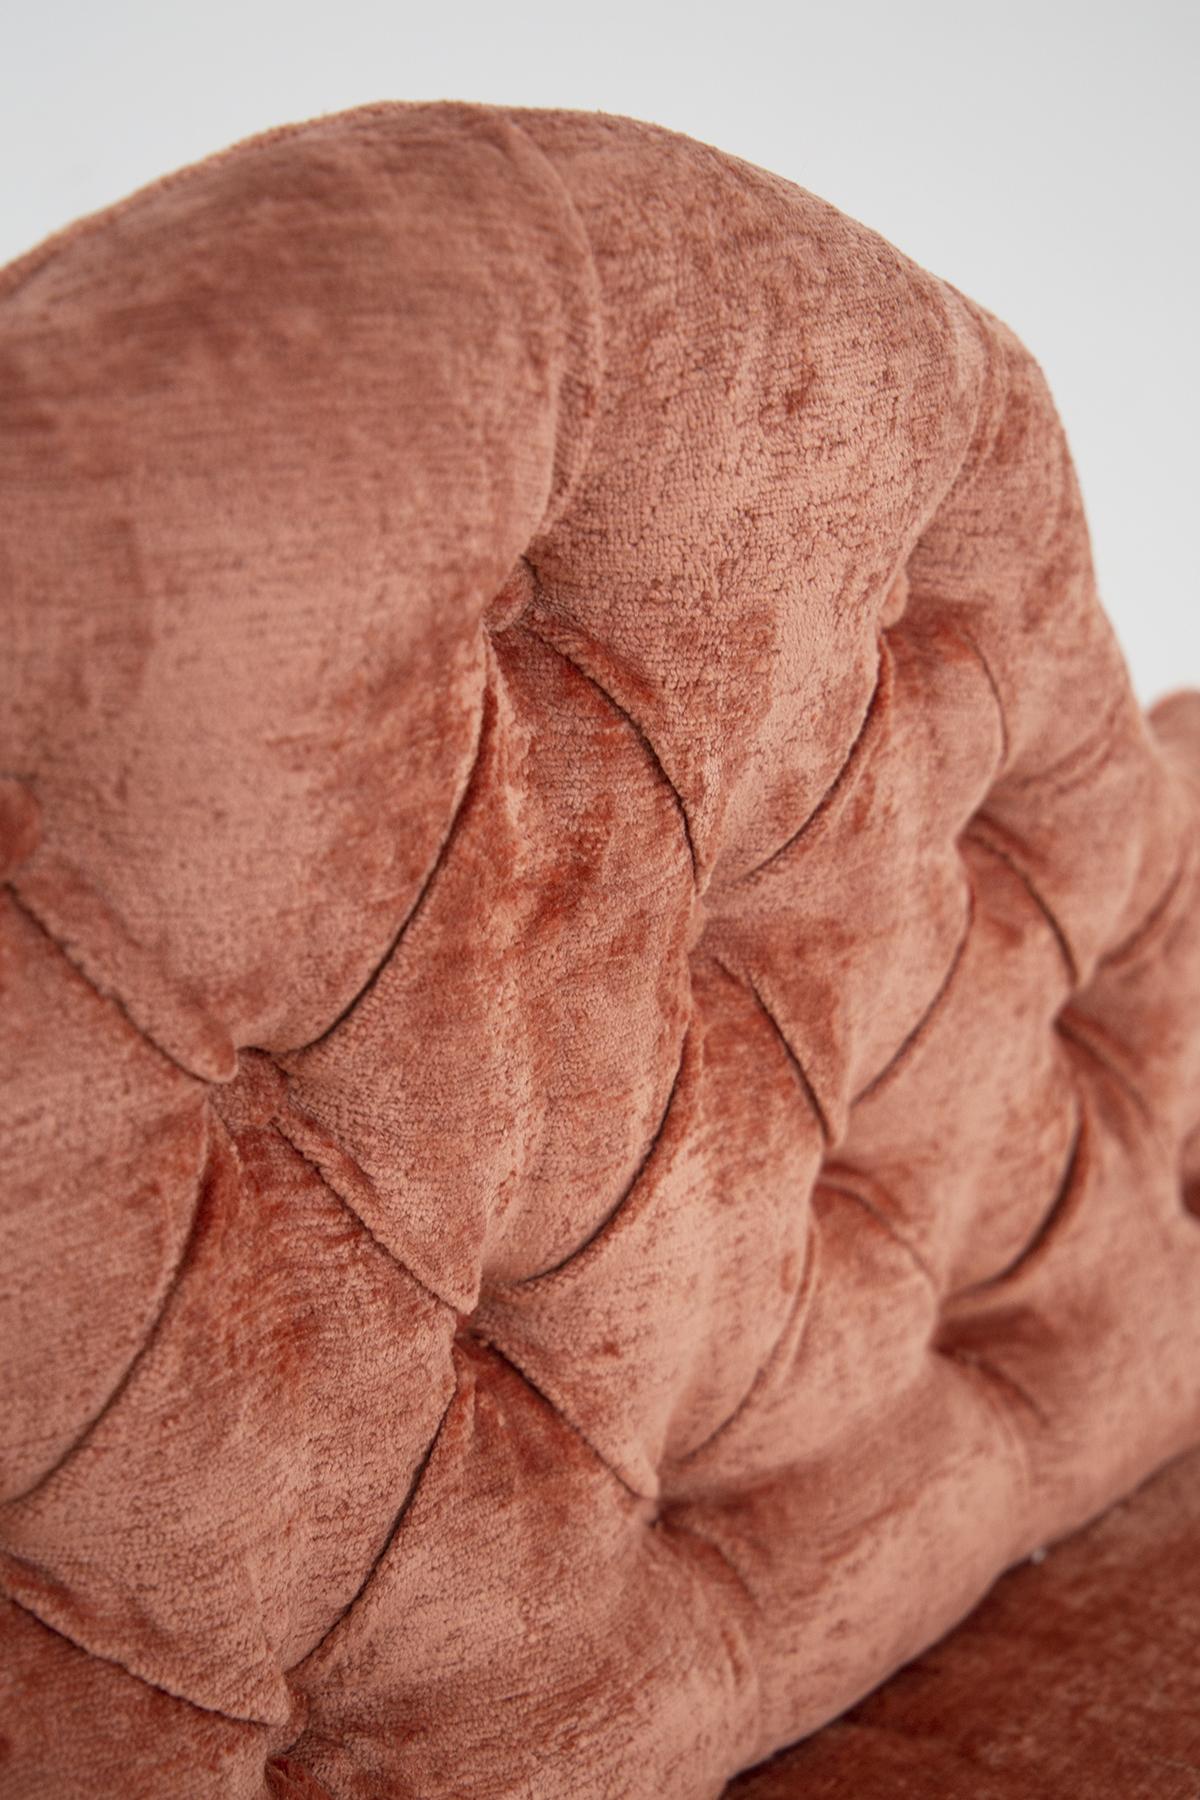 Magnifique canapé de fabrication italienne des années 1950.
Le canapé italien a été recouvert d'un tissu damassé capitonné dans des tons ivoires.
L'assise souple et arrondie est très confortable pour l'invité, le dossier a une forme